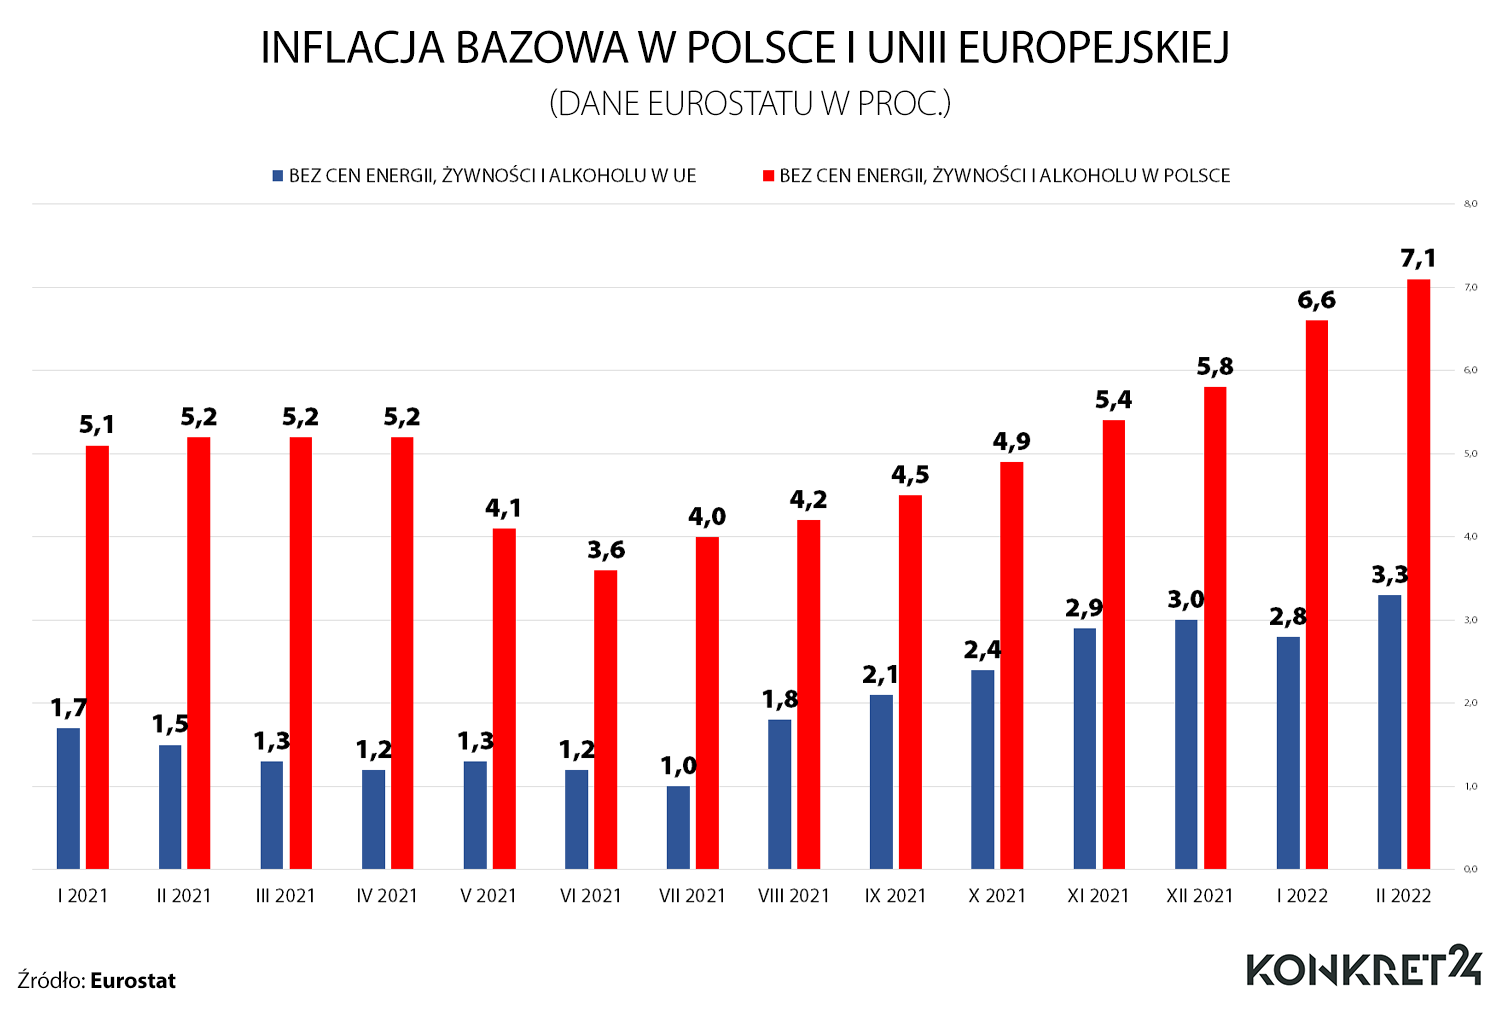 Jak rosła inflacja bazowa, czyli bez uwzględniania cen energii i żywności - Polska i Unia Europejska